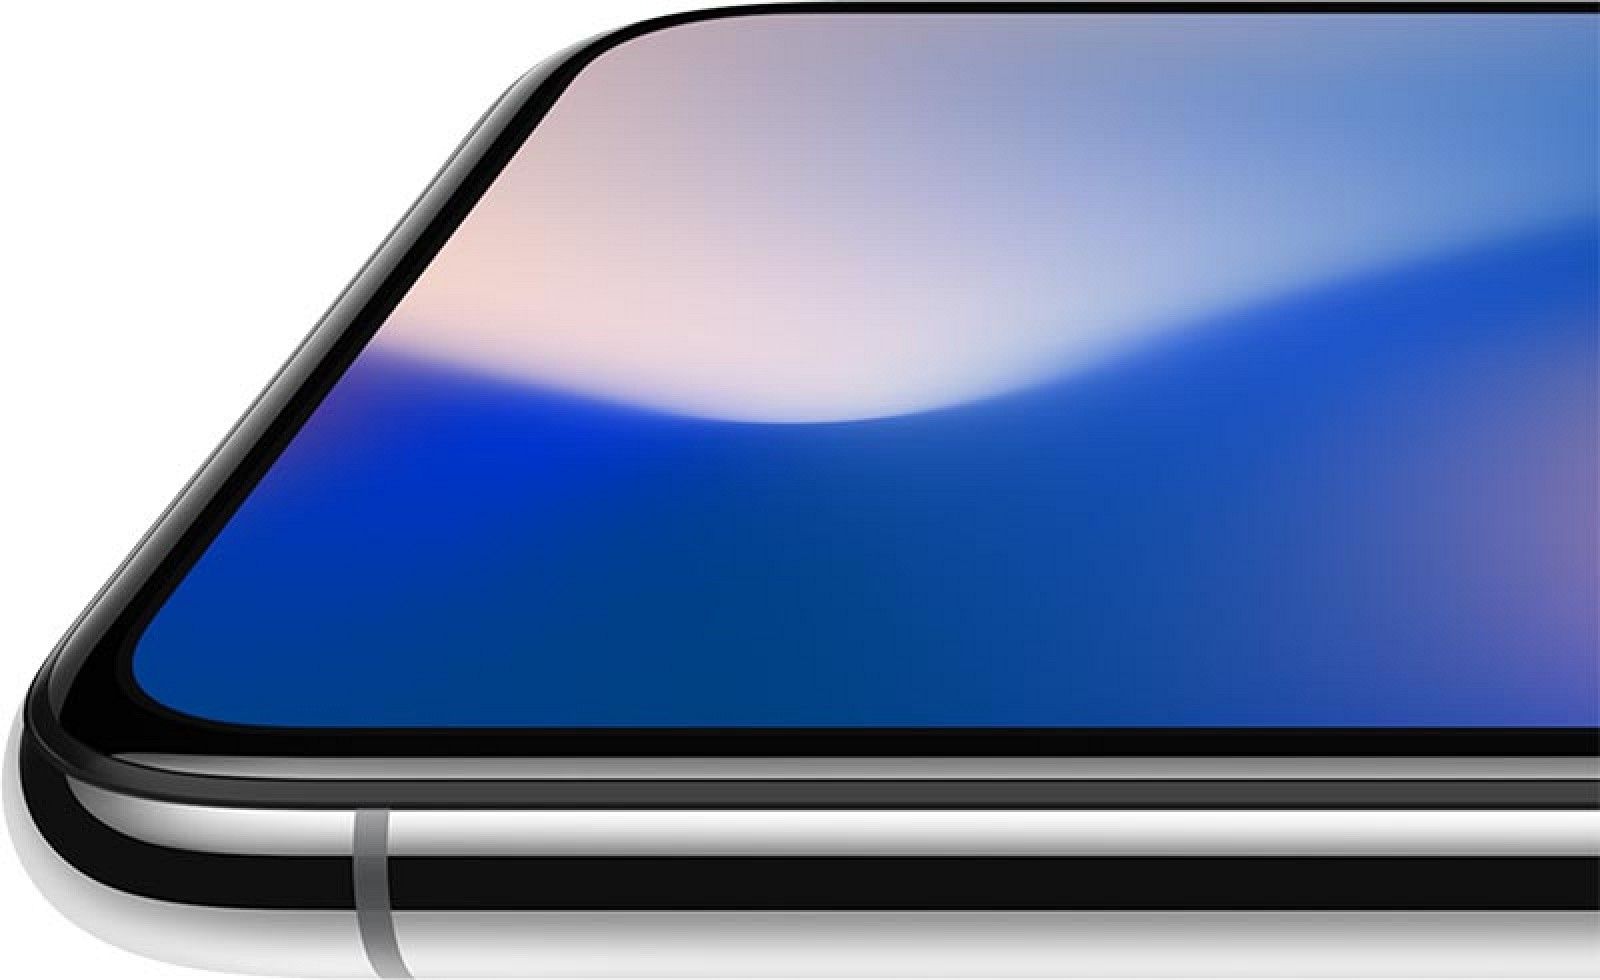 Apple Reimbursed Samsung $683 Million After Missing OLED Display Targets